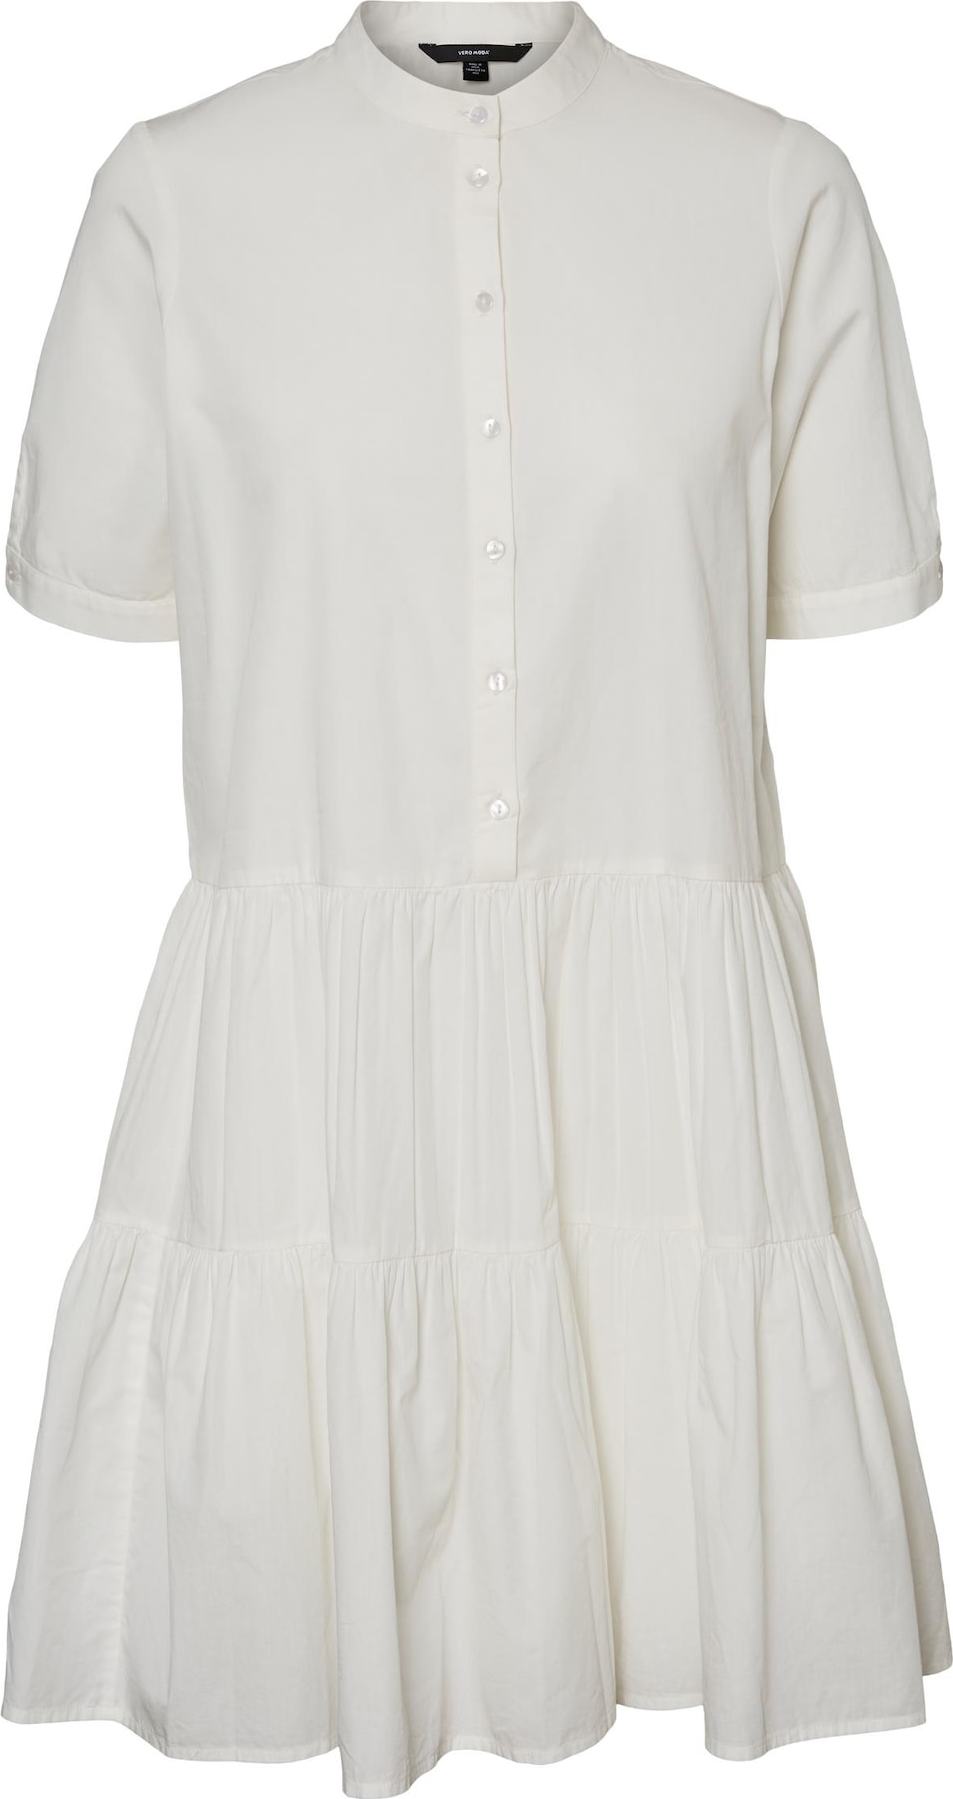 Vero Moda Petite Košilové šaty 'Delta' přírodní bílá